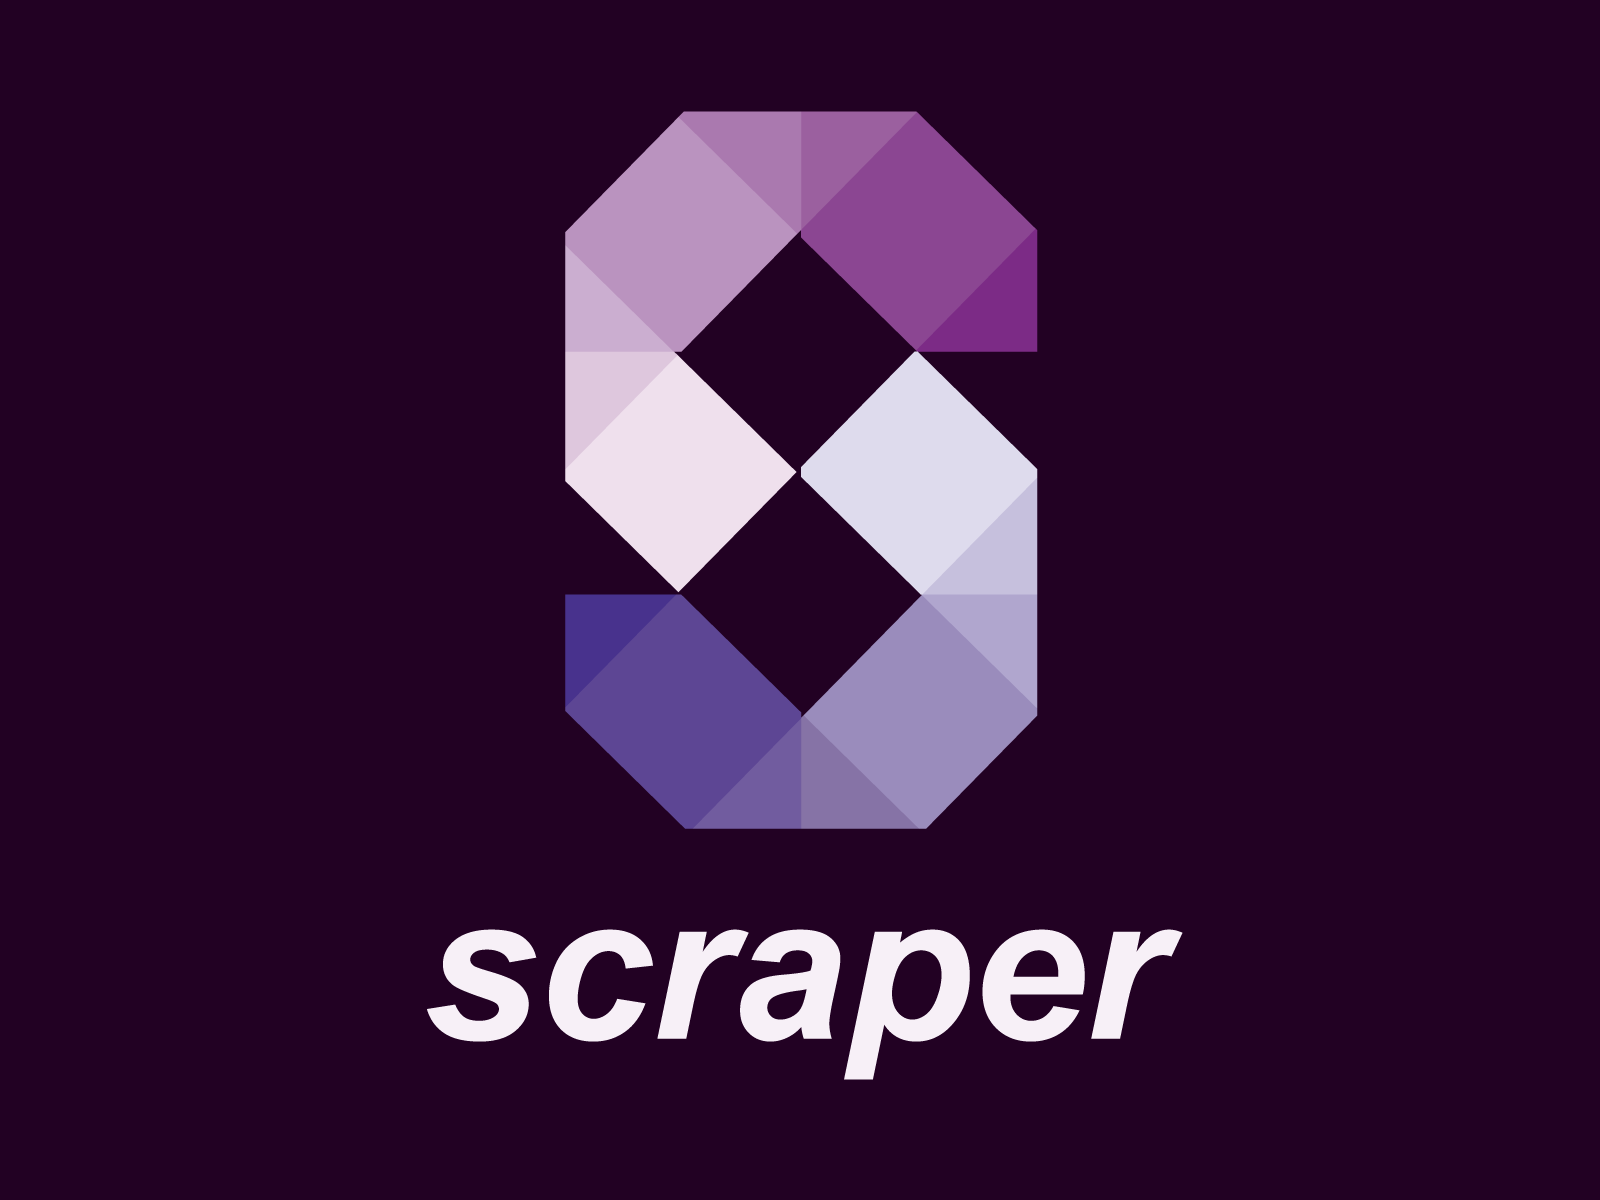 scraper branding illustration logo ux vector